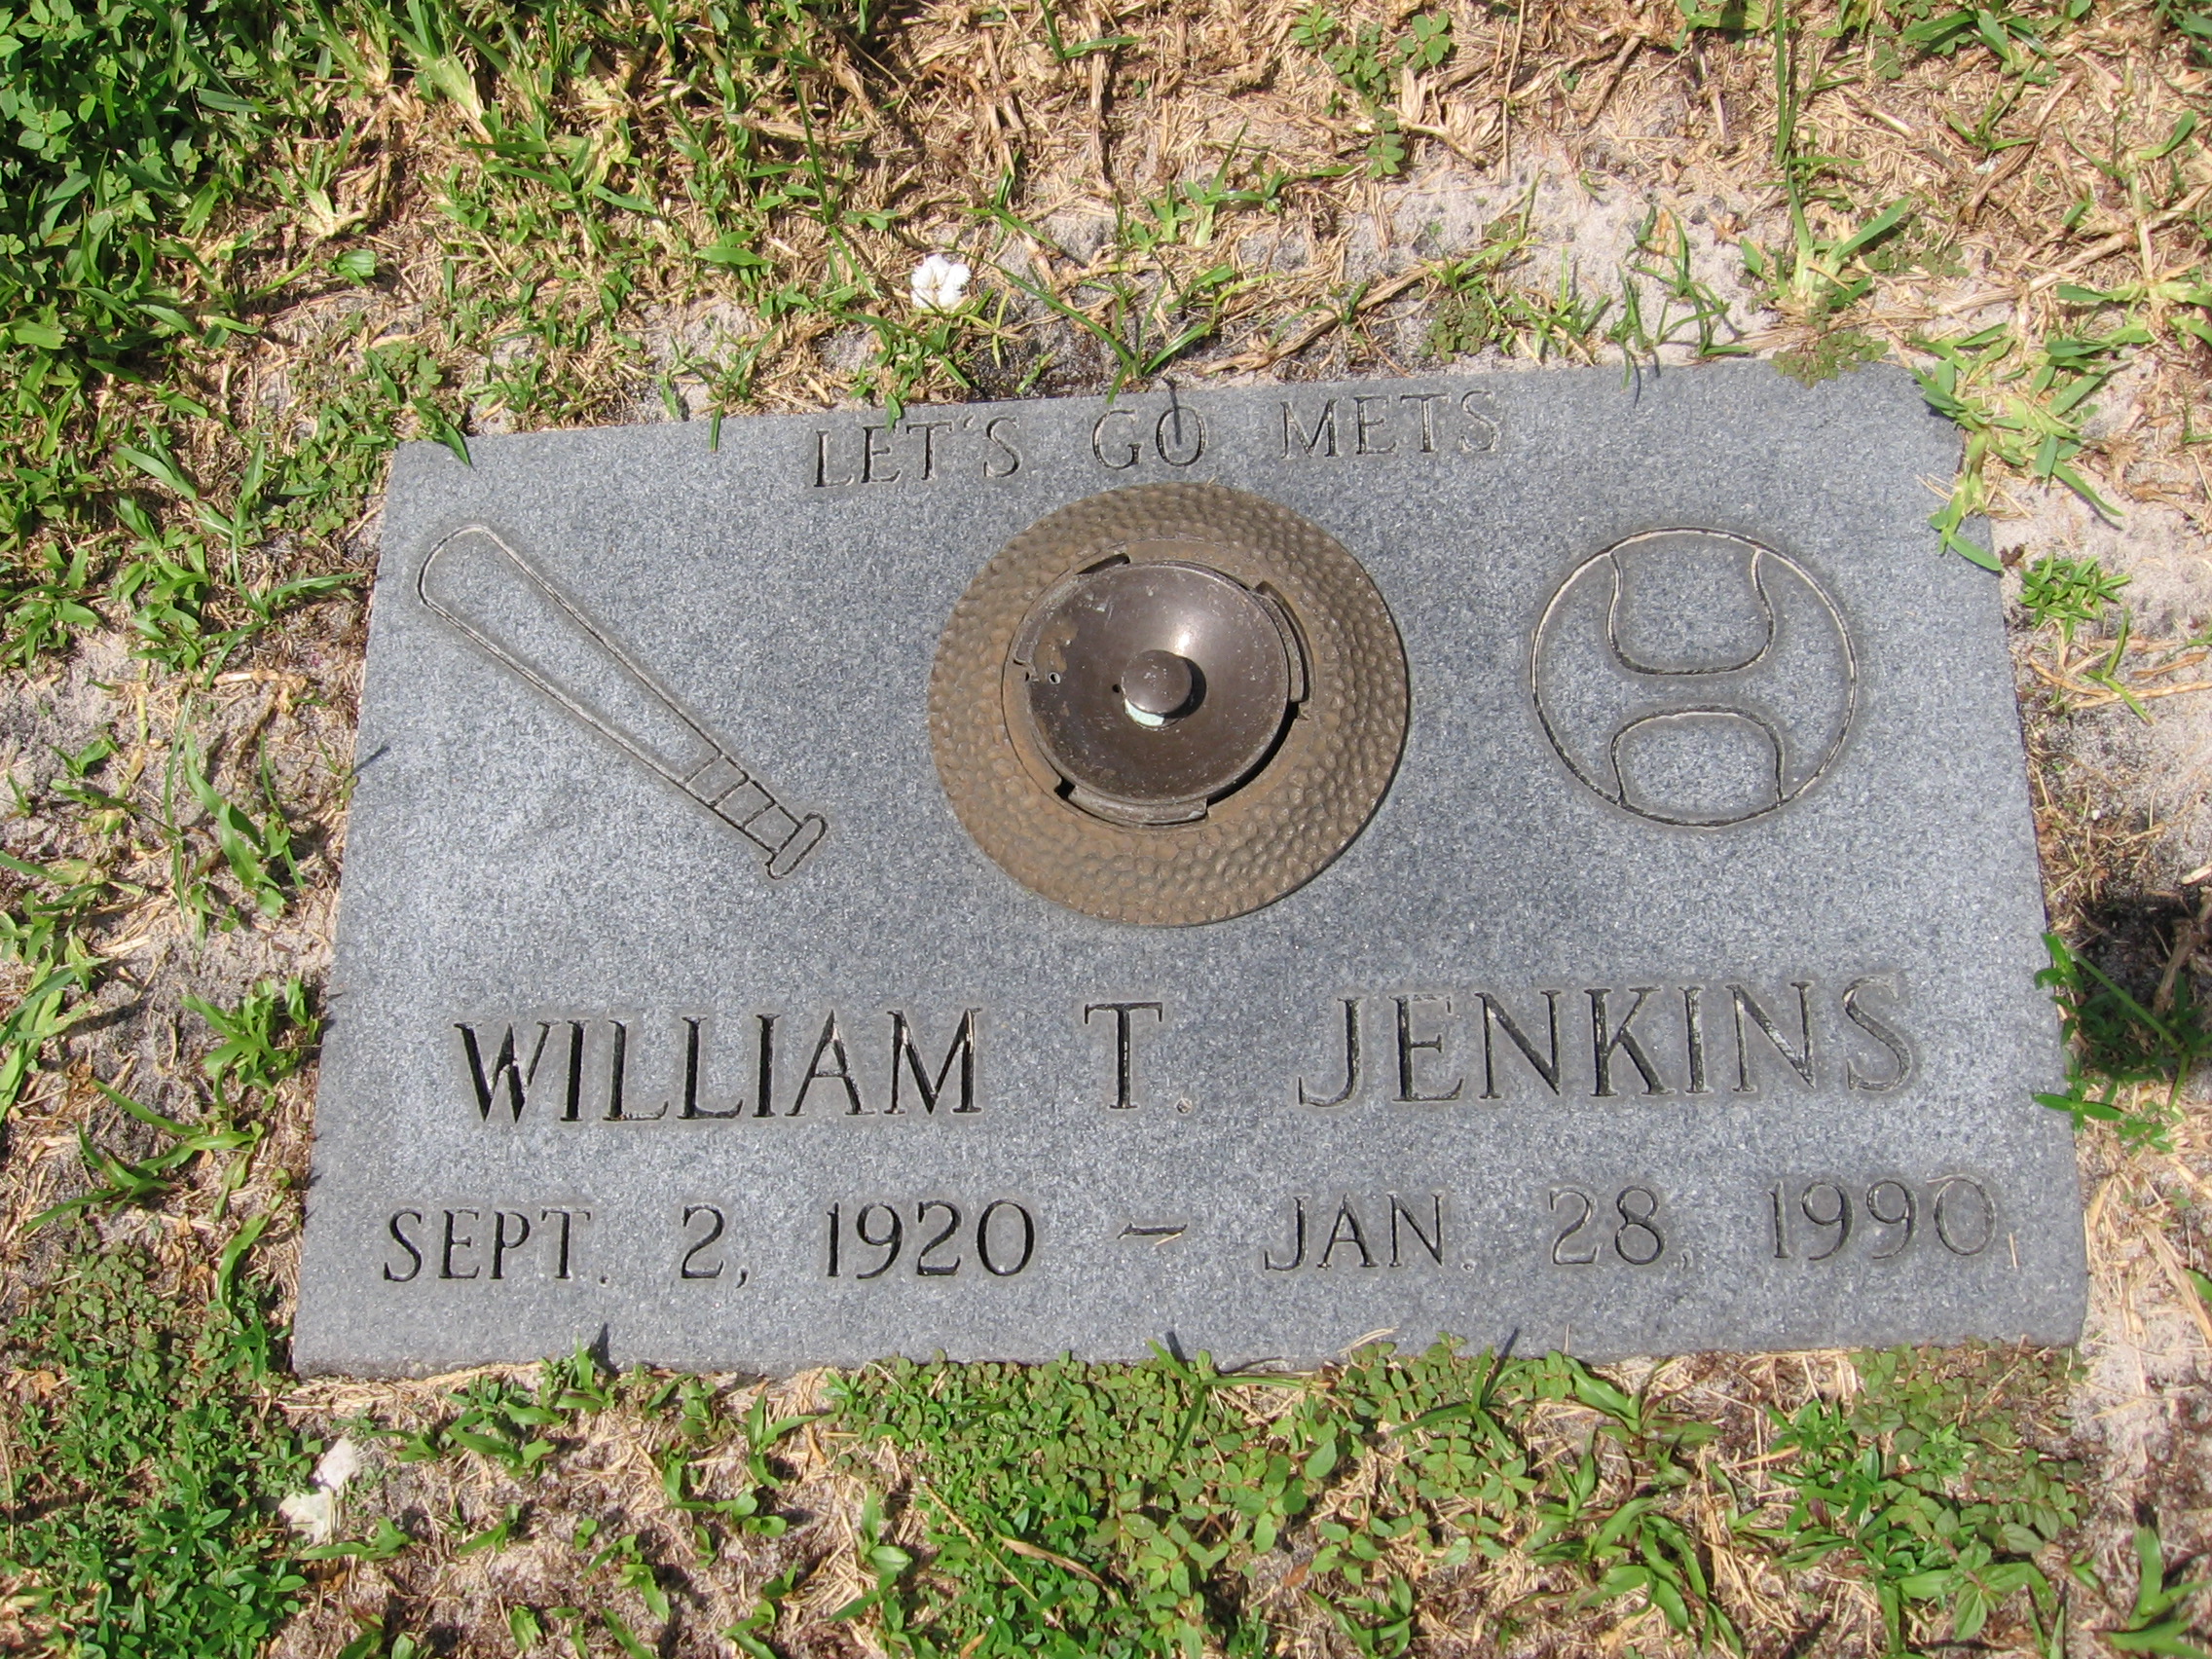 William T Jenkins